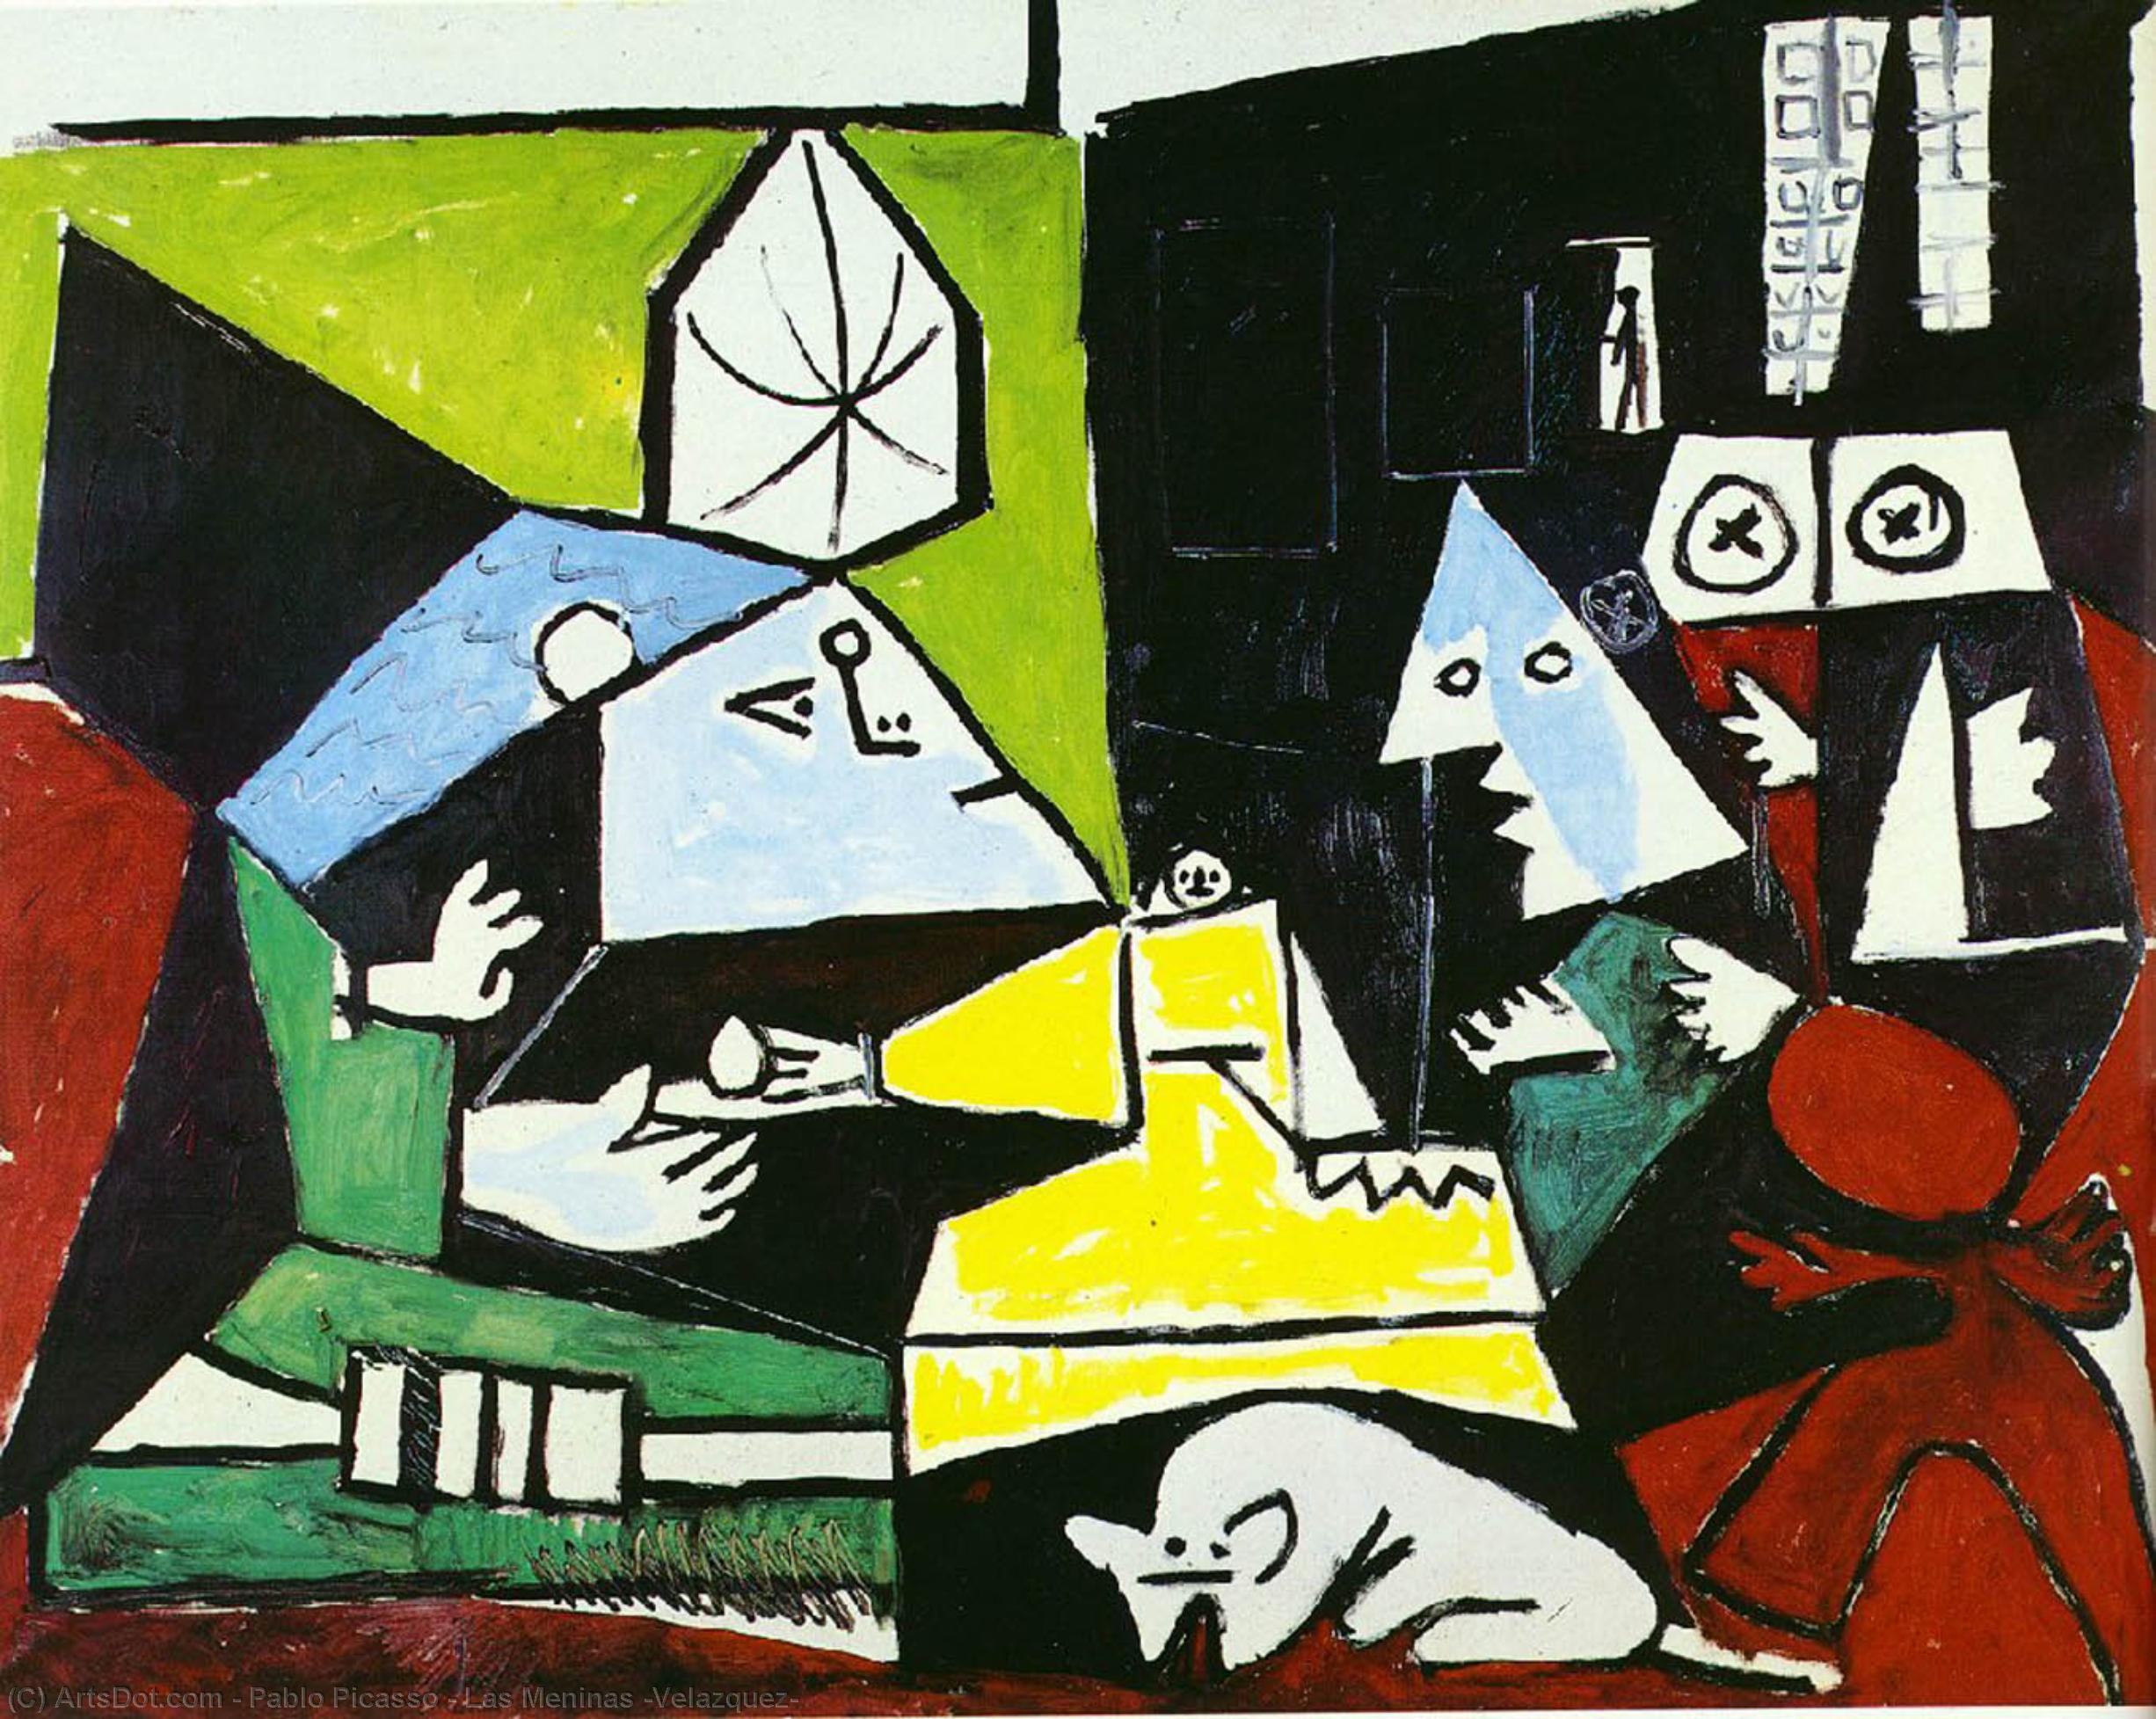 WikiOO.org - Enciclopédia das Belas Artes - Pintura, Arte por Pablo Picasso - Las Meninas (Velazquez)